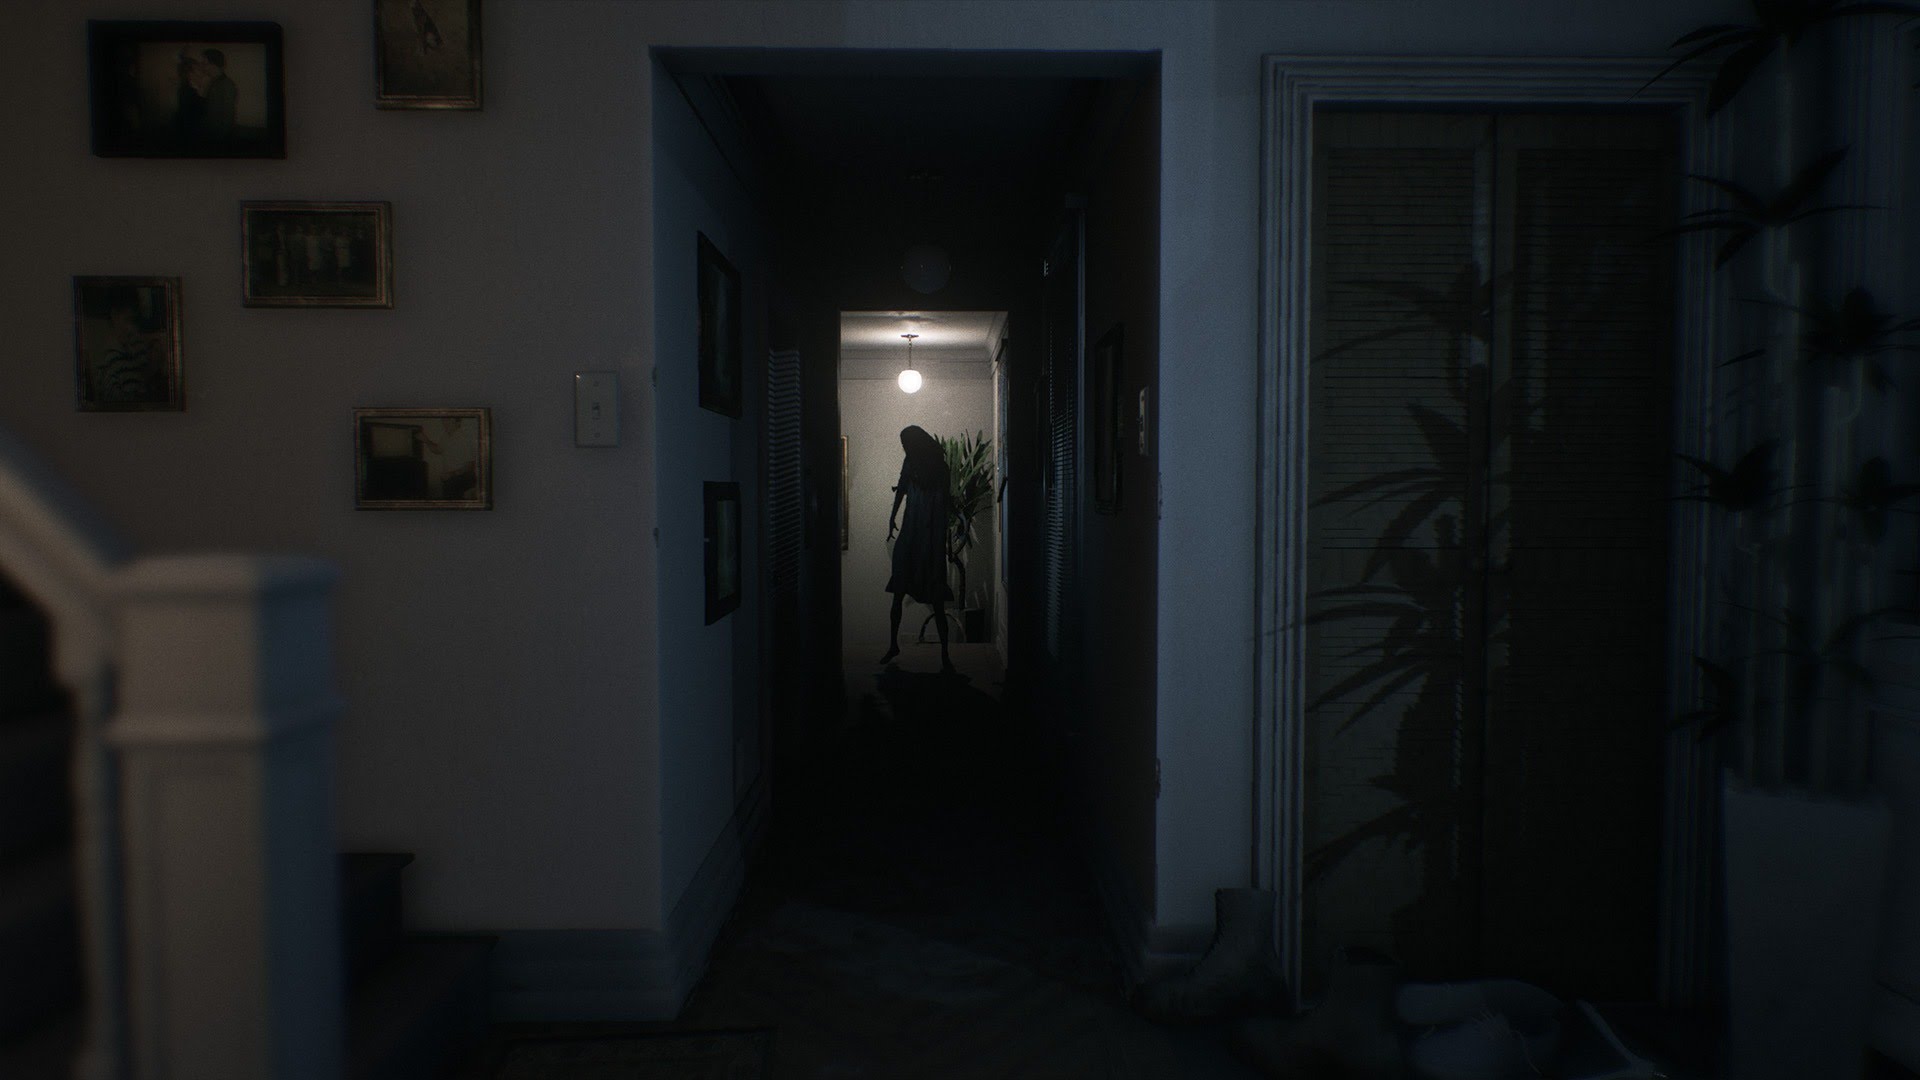 Visage el juego de terror psicológico inspirado por P.T. lanza un nuevo trailer que luce aterrador.